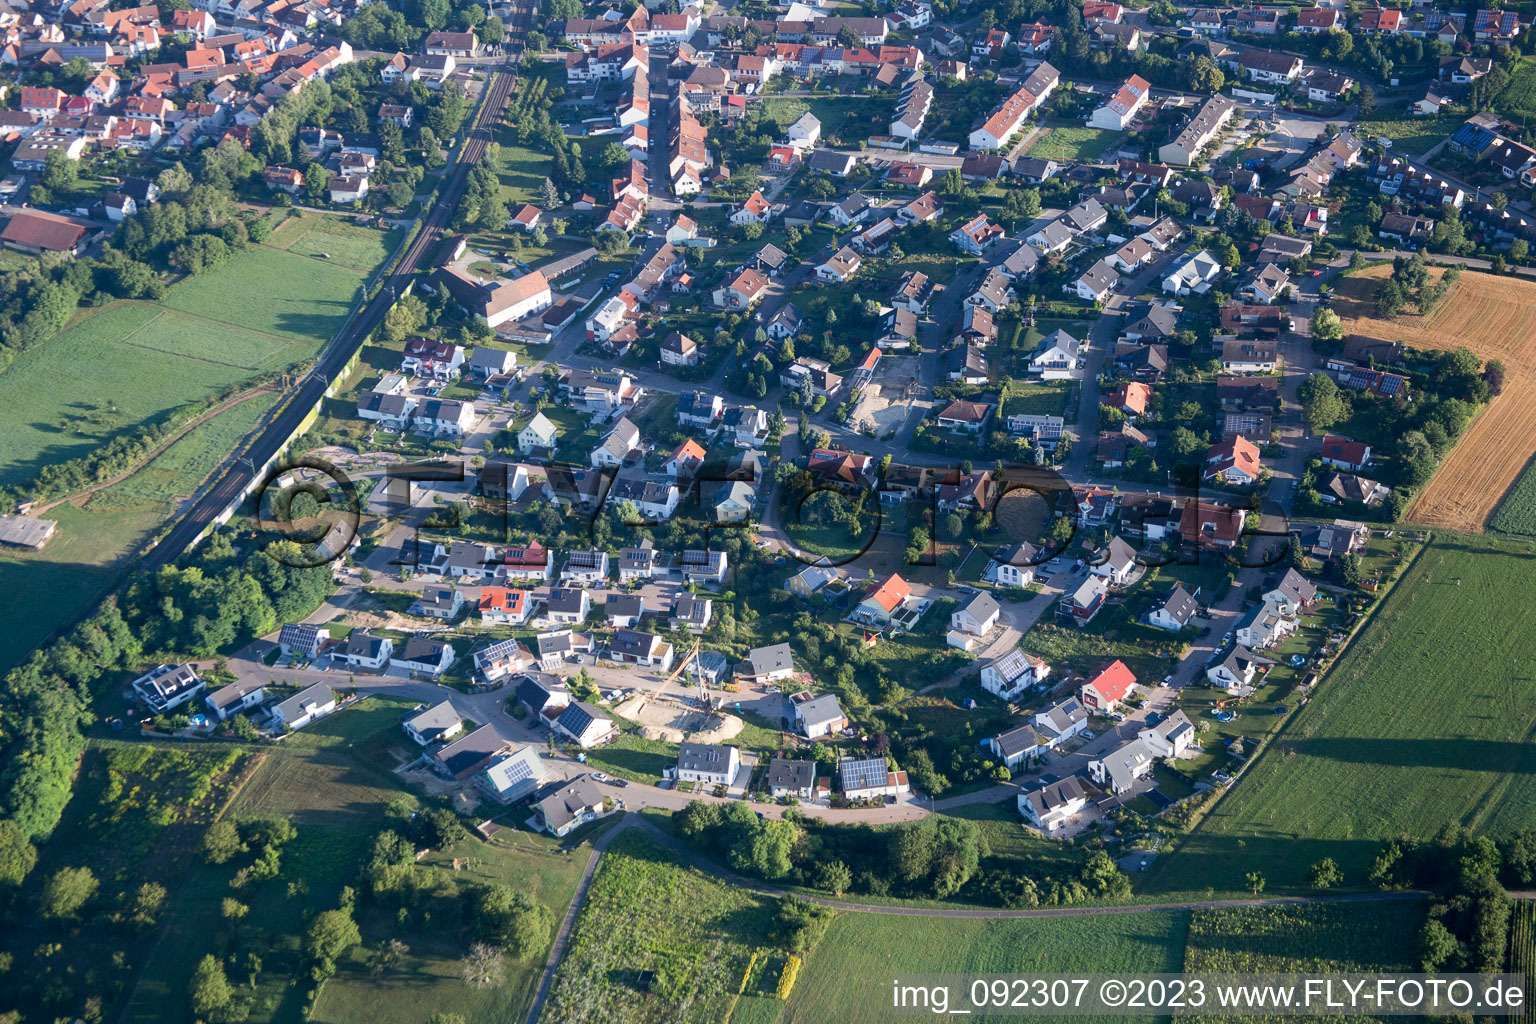 Luftbild von Kraichgaustr im Ortsteil Heidelsheim in Bruchsal im Bundesland Baden-Württemberg, Deutschland